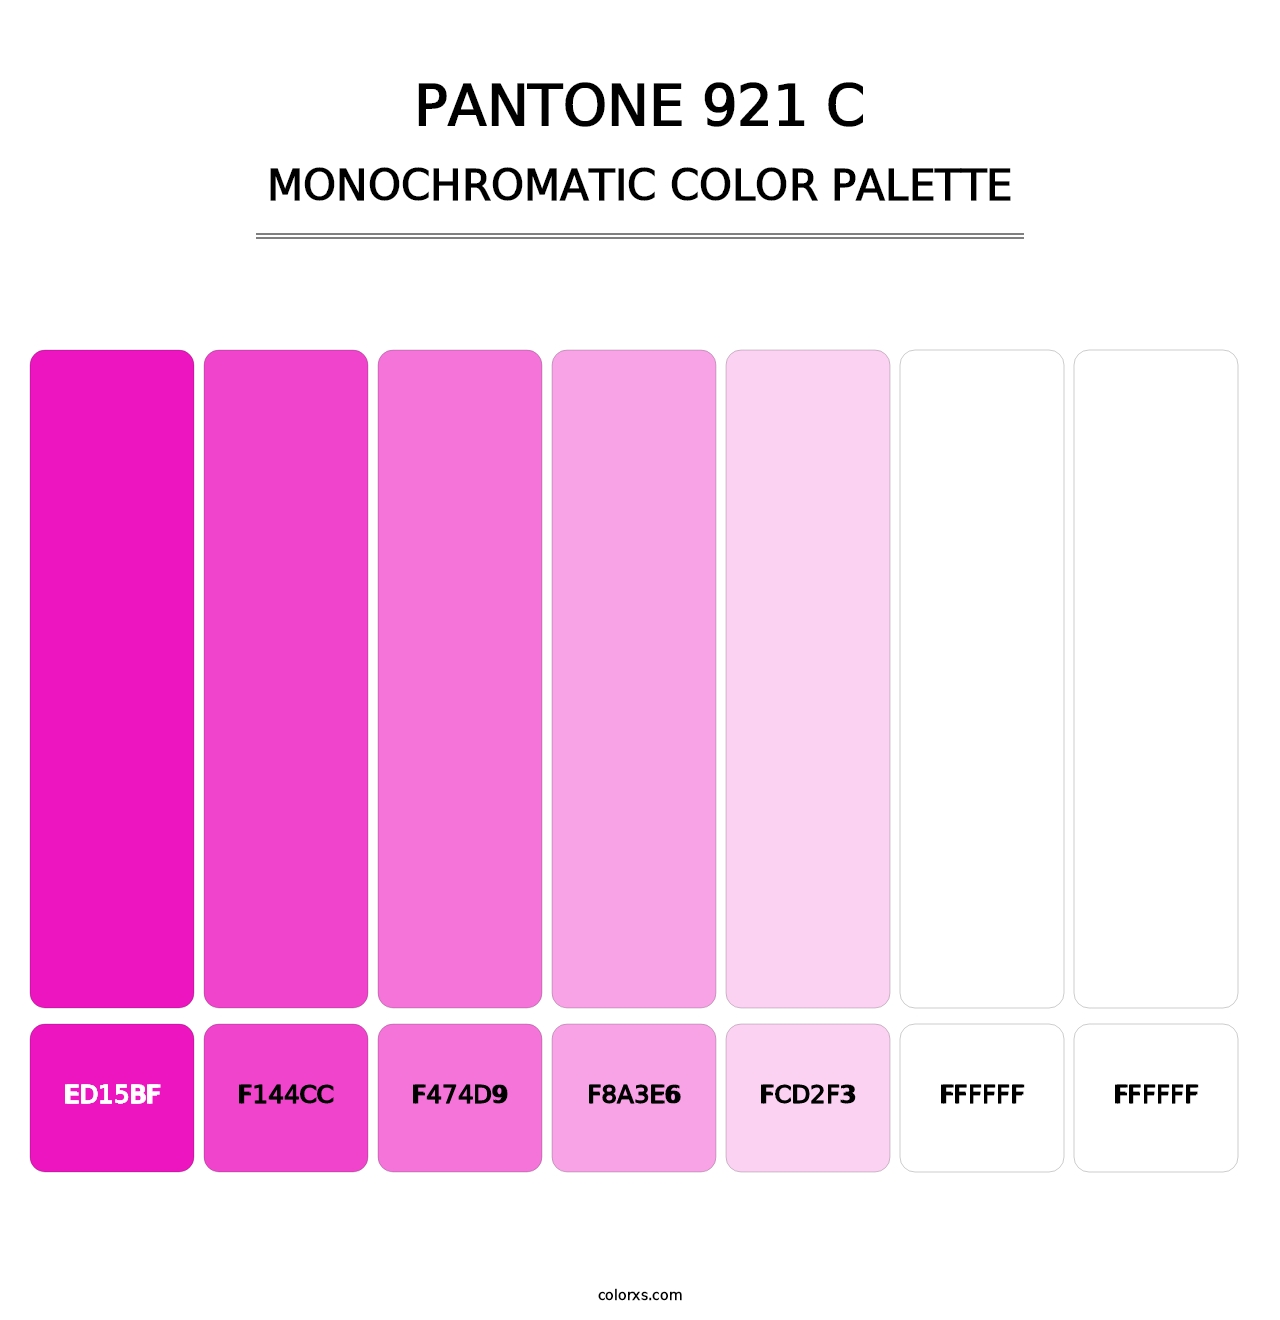 PANTONE 921 C - Monochromatic Color Palette